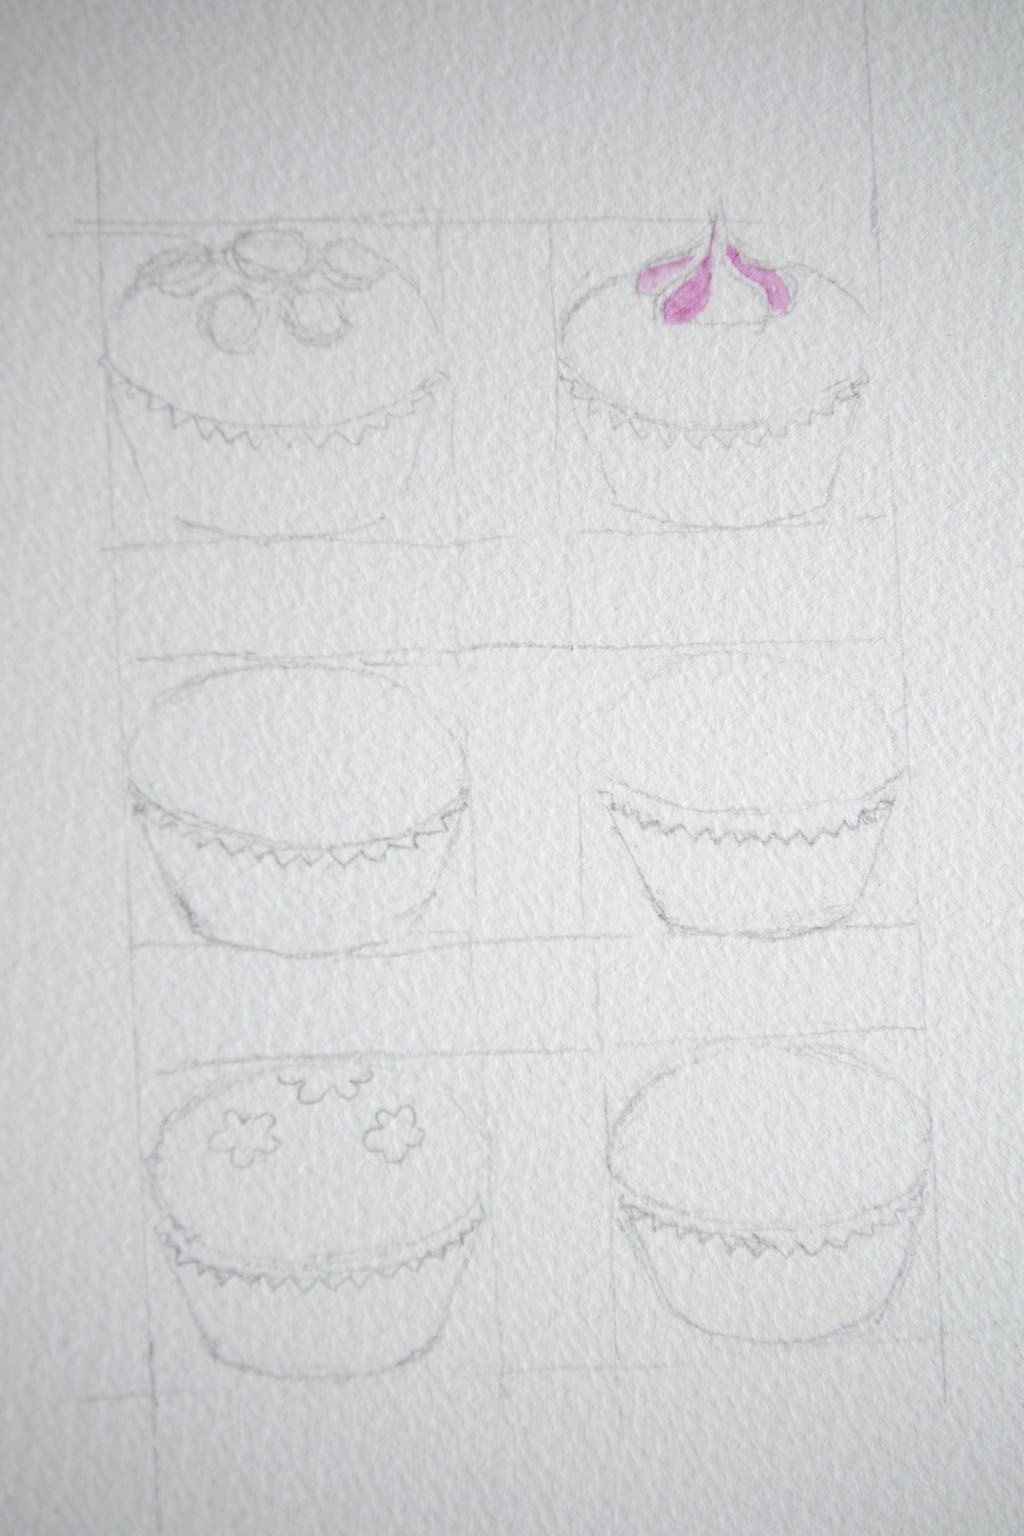 カップケーキ １ ｙｏｓｕｋｅ ｔａｎａｋａの水彩画の描き方